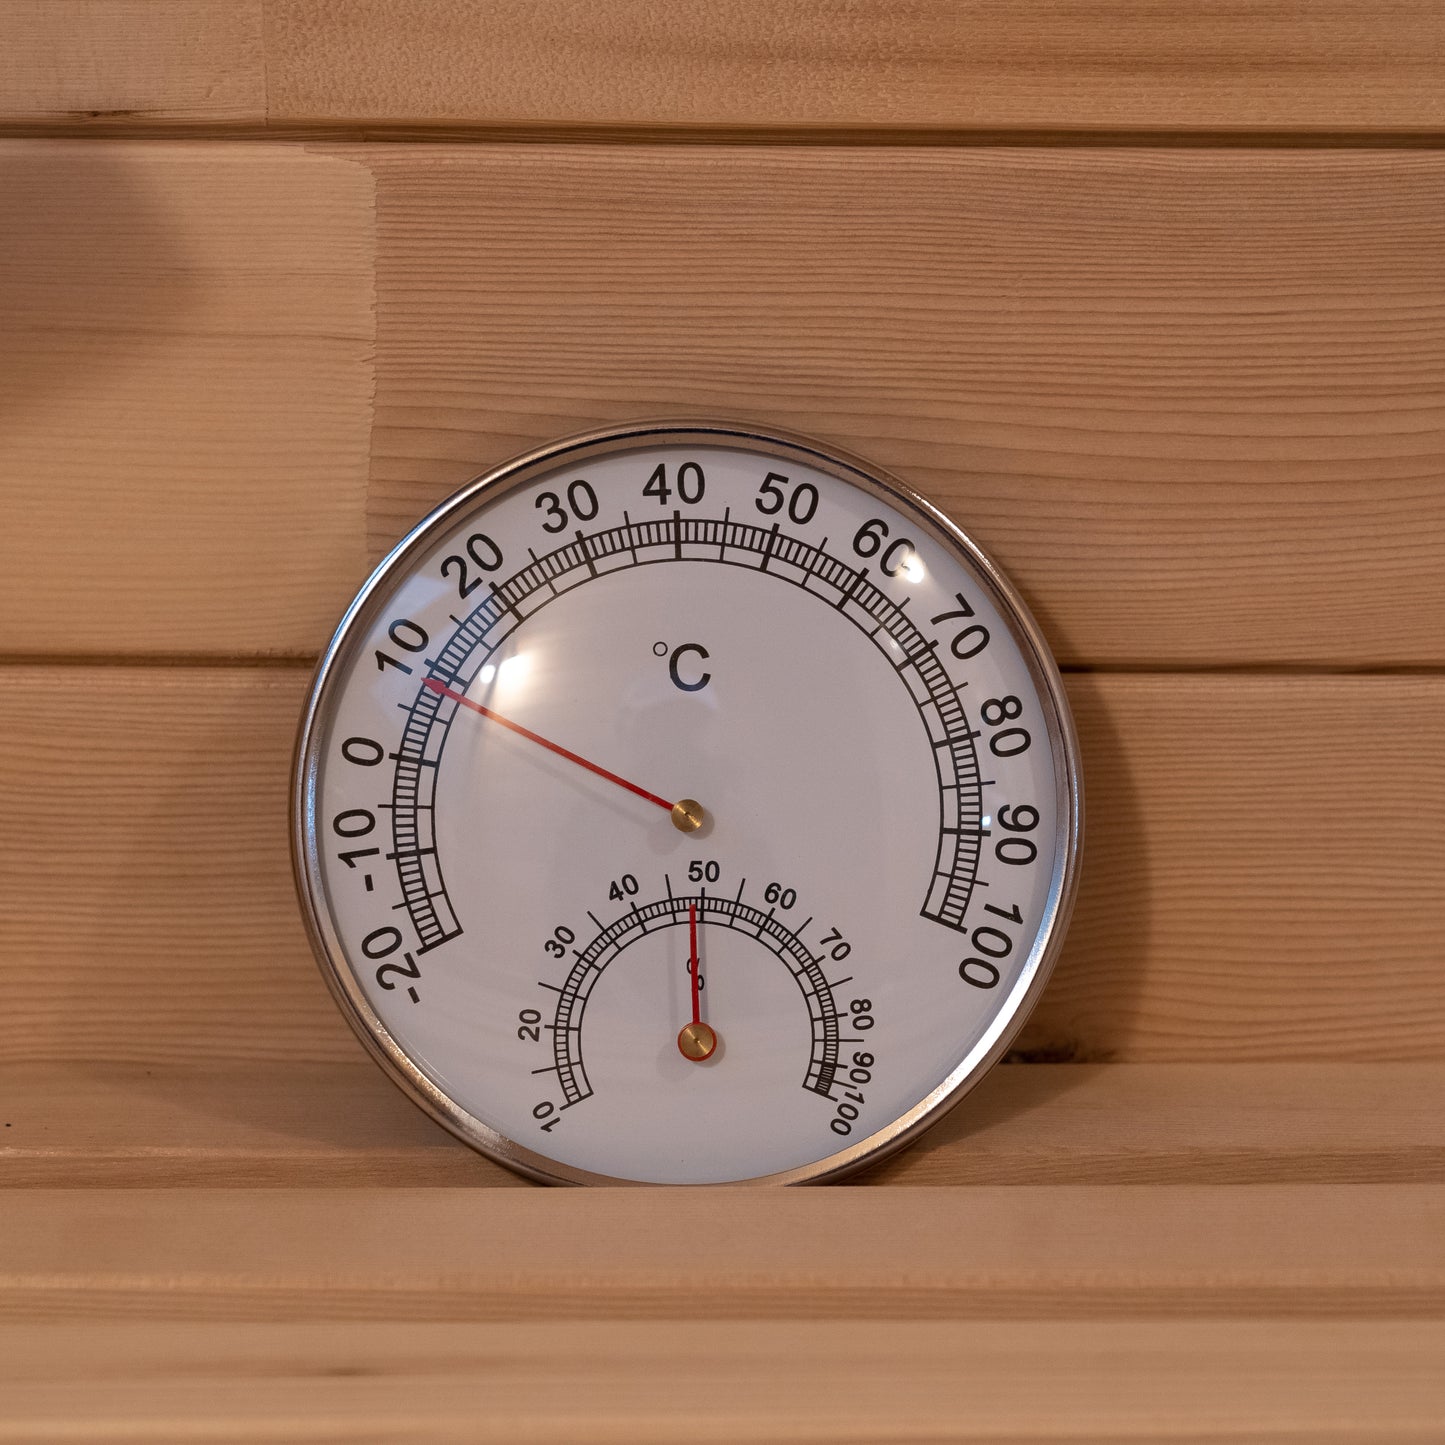 Smartmak 2-room Outdoor Barrel Sauna